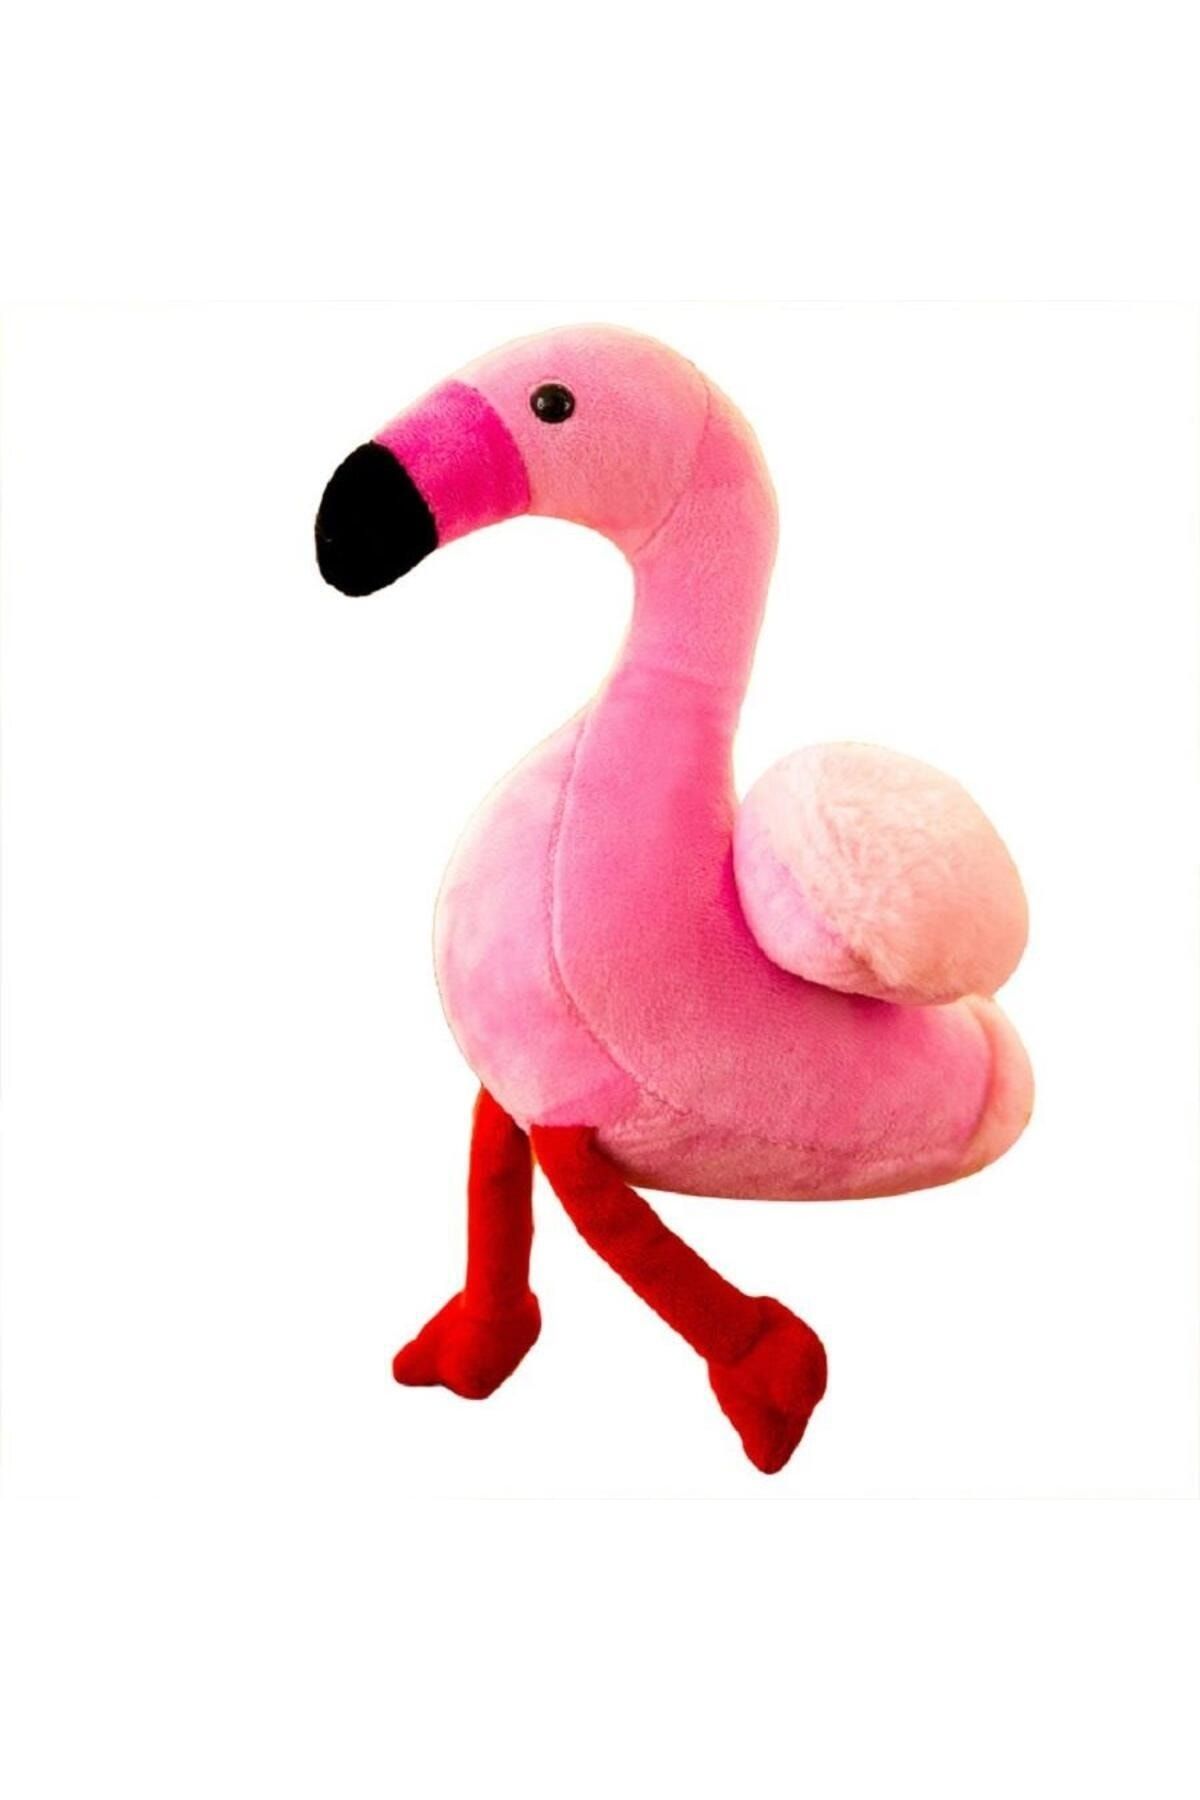 e-life İthal Kumaş Yumuşak Dokulu Hawaii Flamingo Parti Süsleme Peluş Oyuncak Oyun & Uyku Arkadaşı 25 cm.